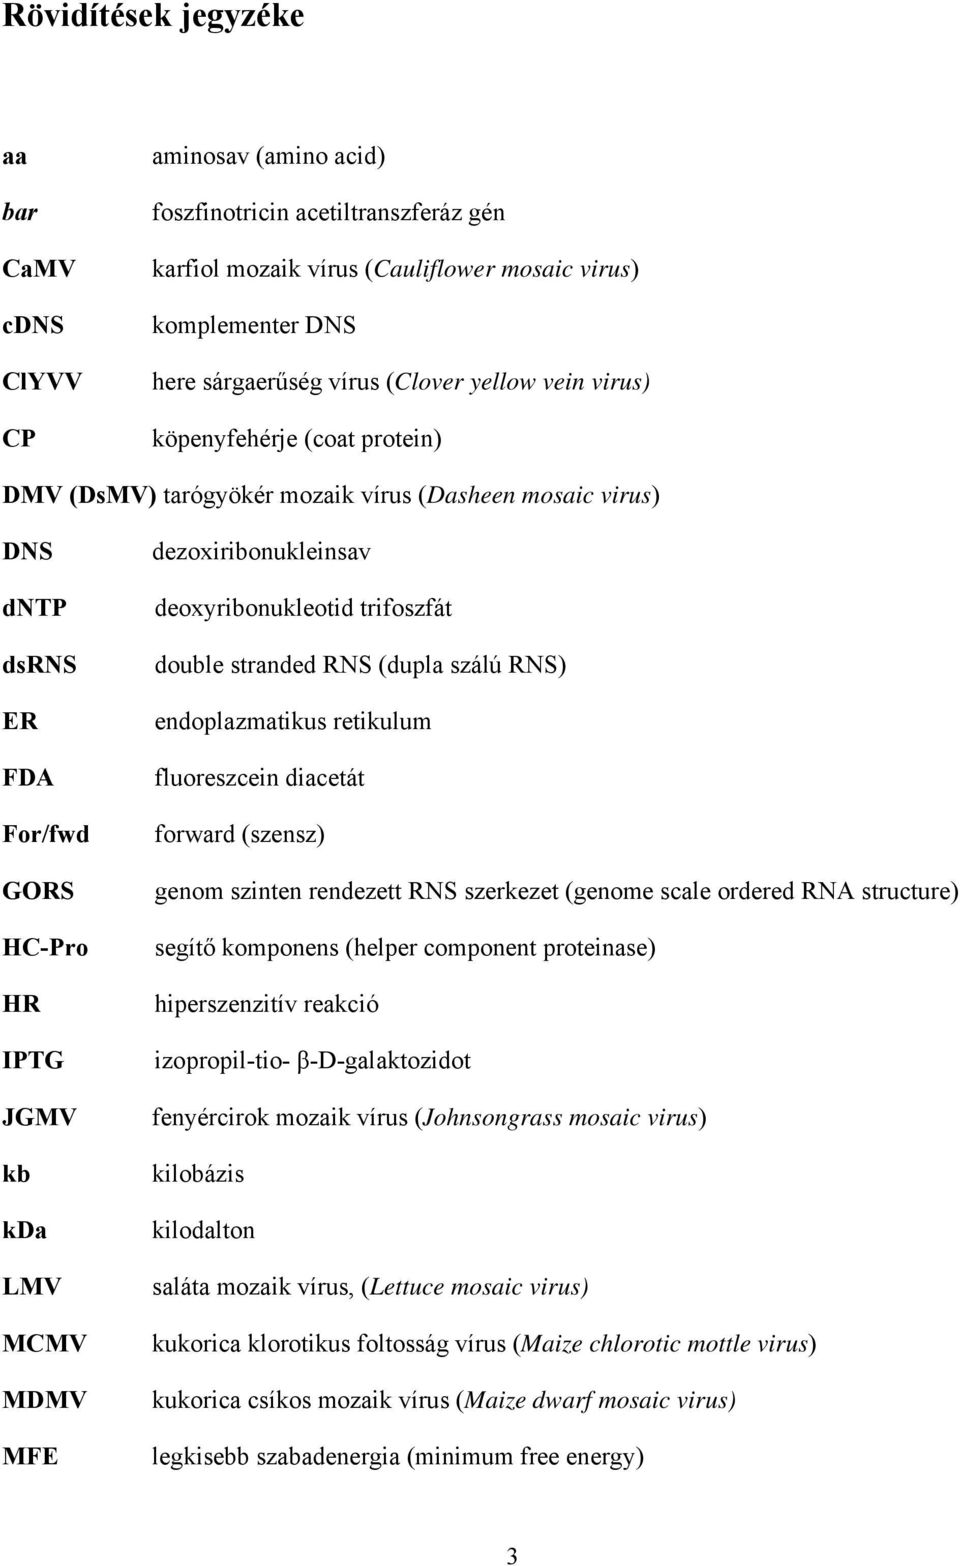 dezoxiribonukleinsav deoxyribonukleotid trifoszfát double stranded RNS (dupla szálú RNS) endoplazmatikus retikulum fluoreszcein diacetát forward (szensz) genom szinten rendezett RNS szerkezet (genome